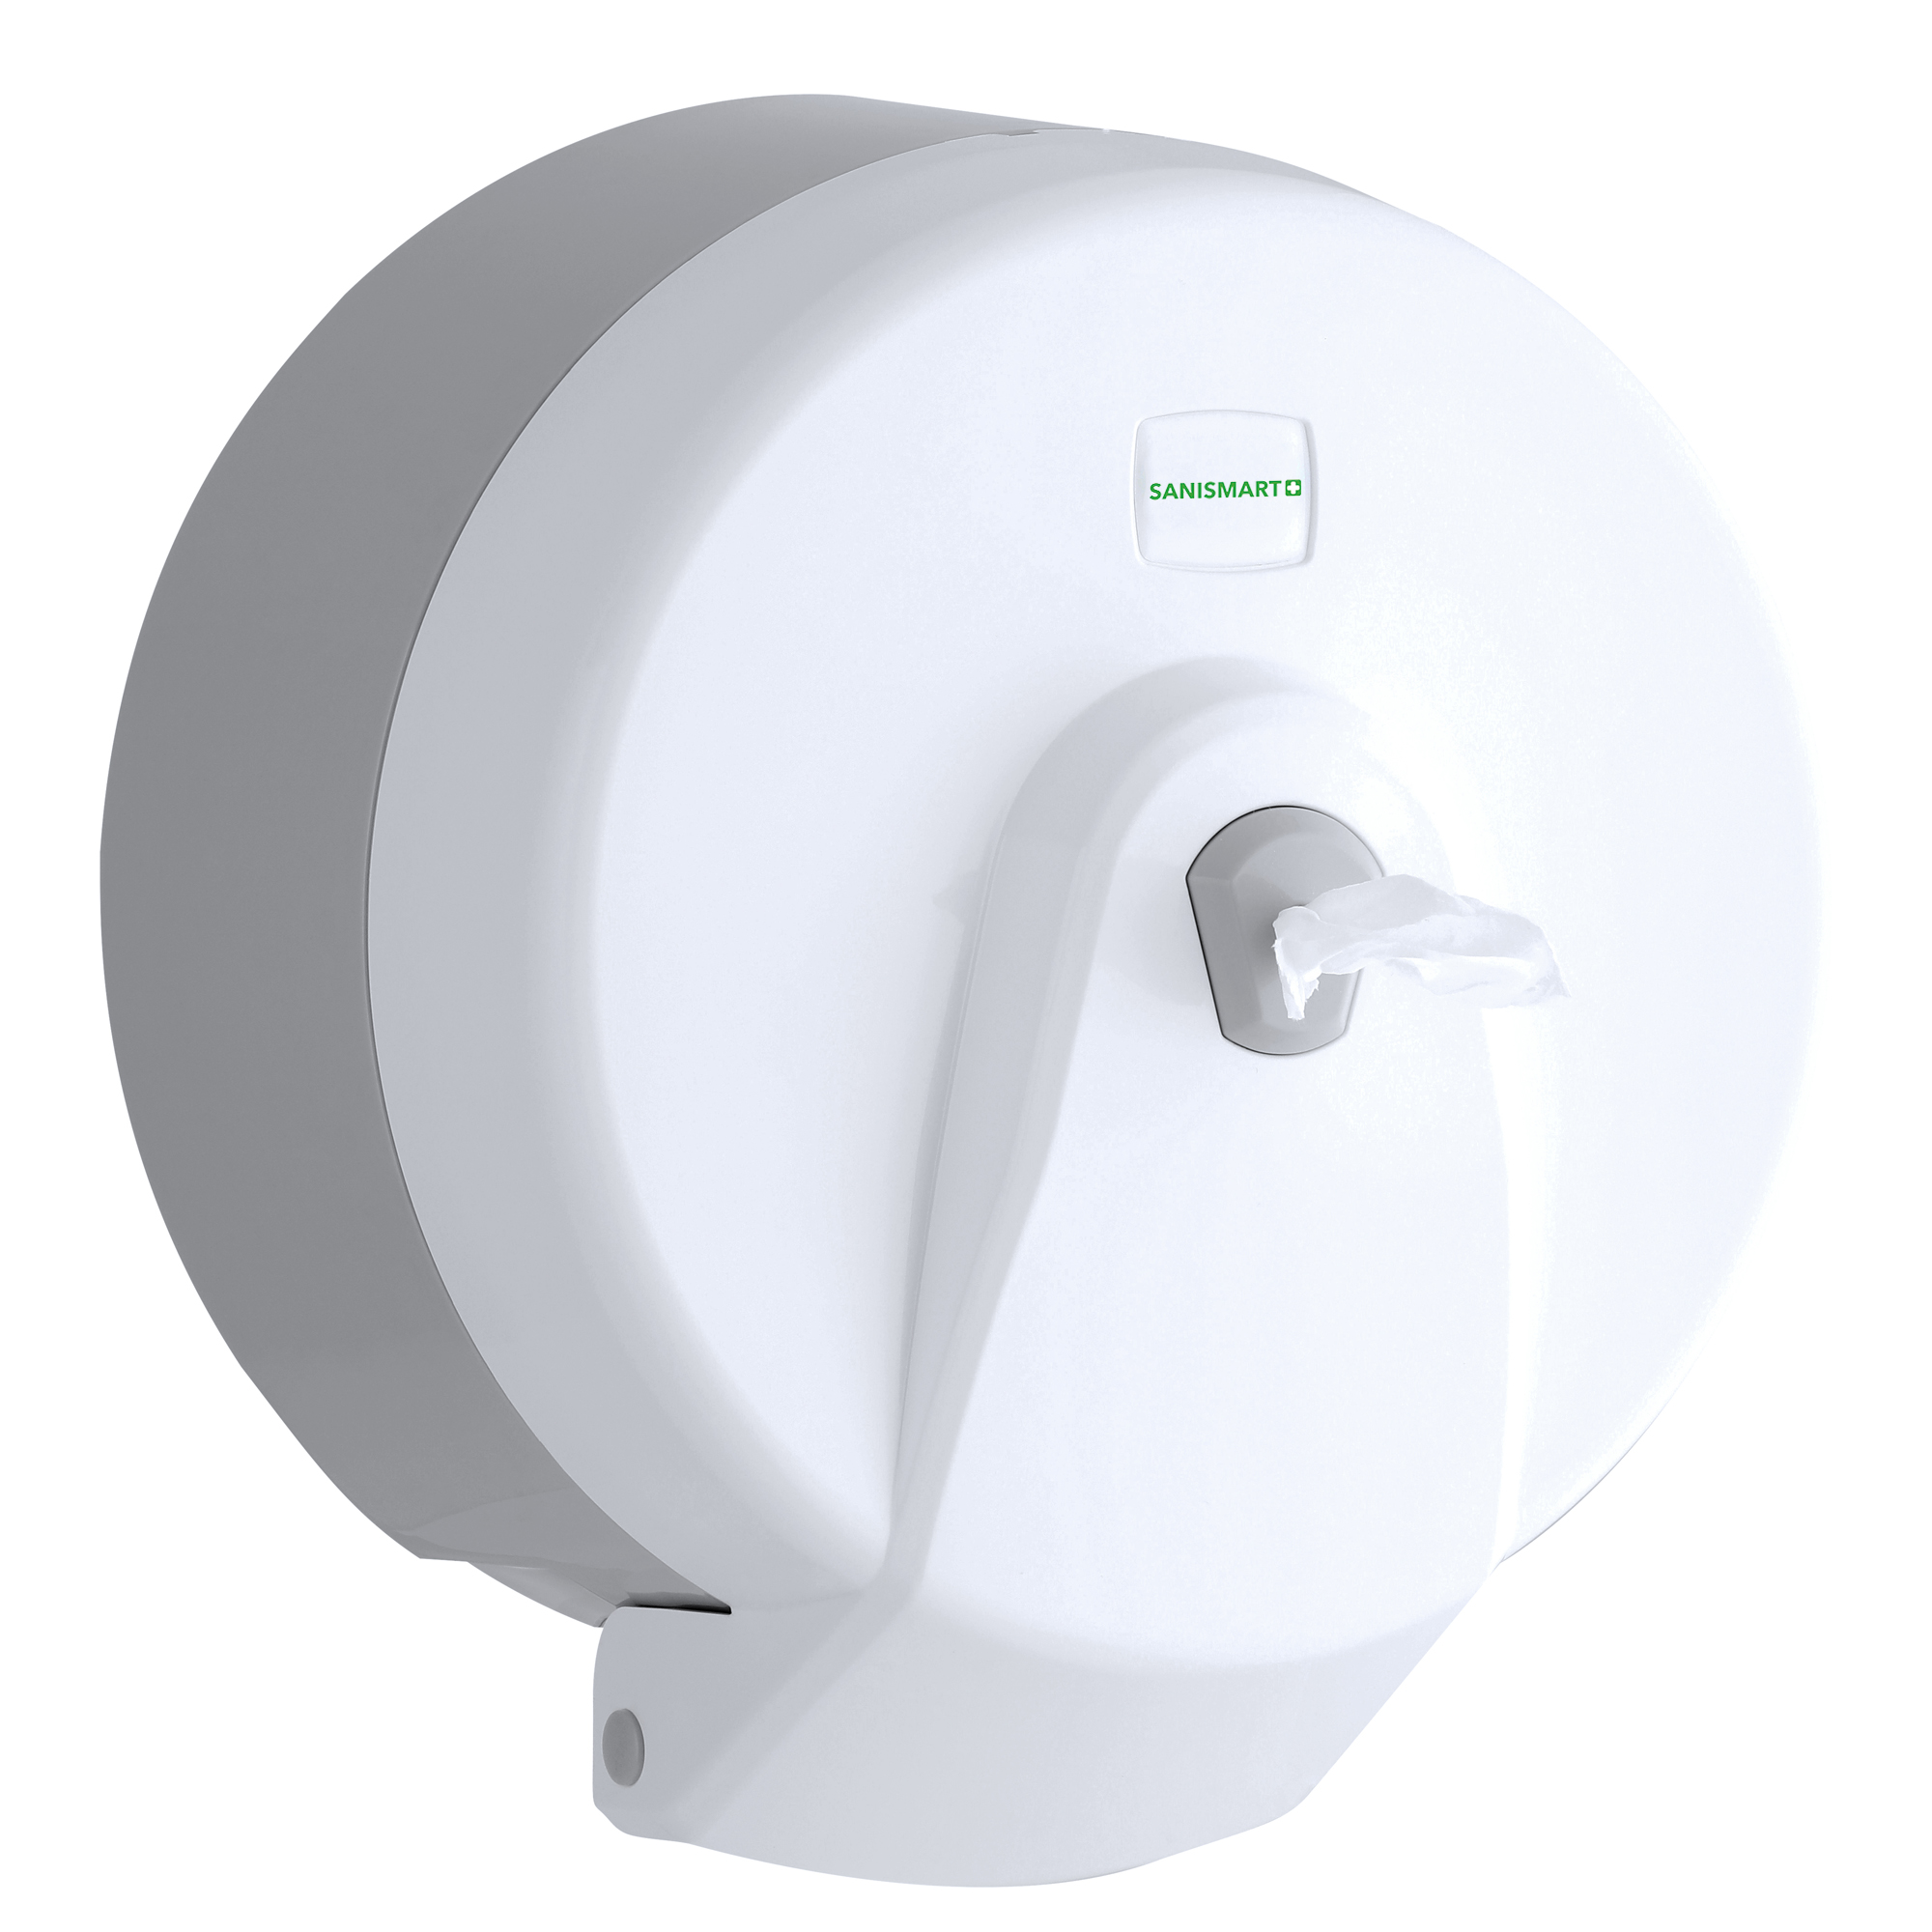 SANISMART Toilettenpapierspender PICEA für Rollen mit 21 cm Durchmesser